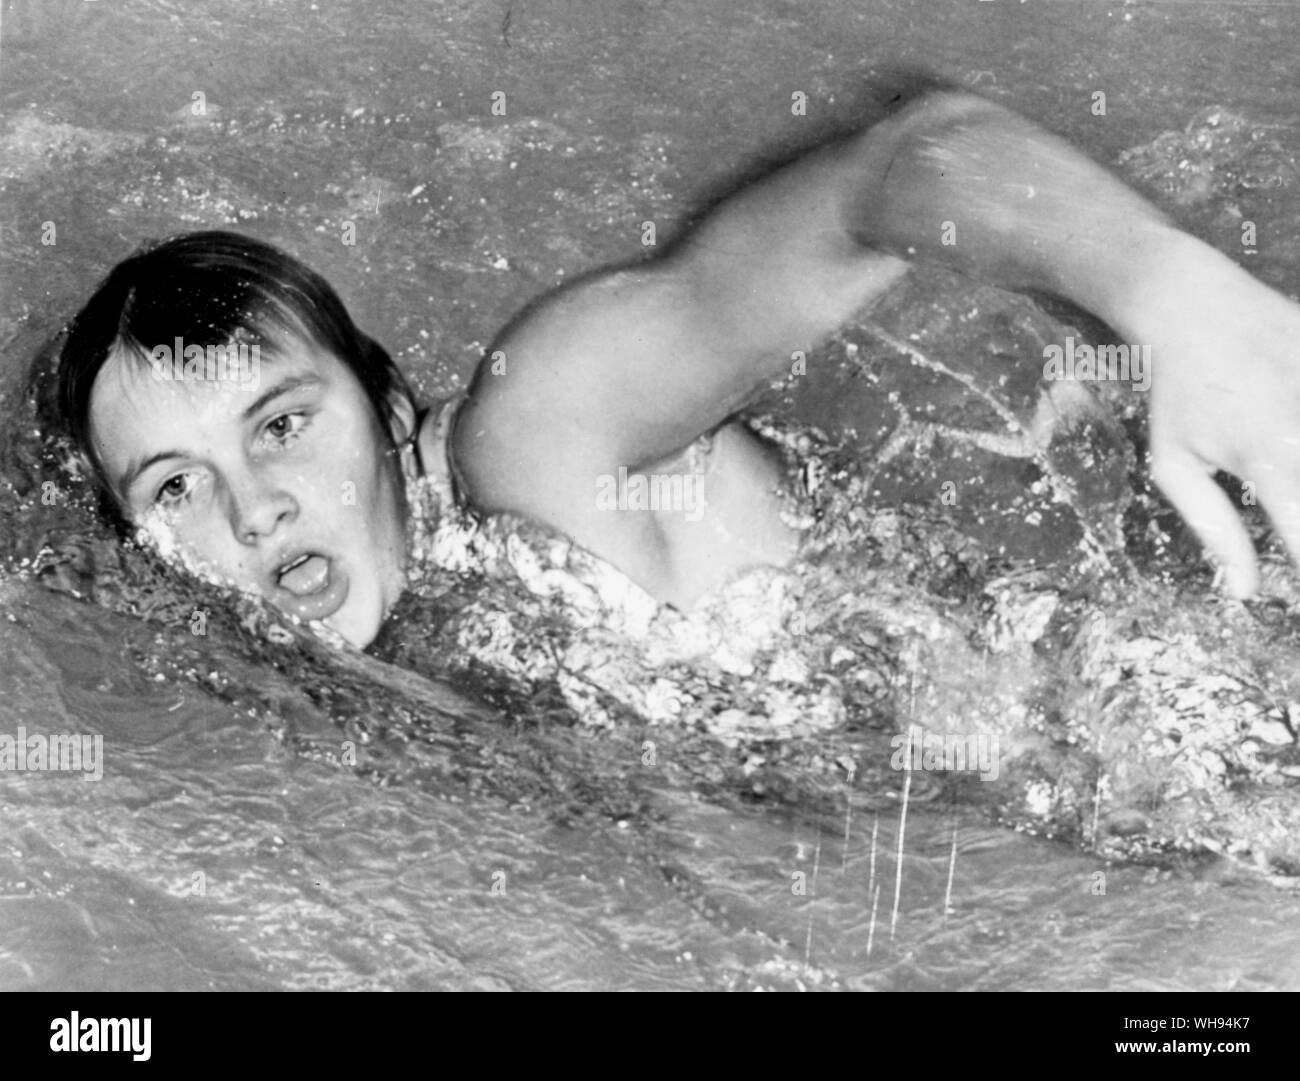 Deutschland. Olympischen Spielen in München 1972: Shane Gould (geboren 1956) von Australien. Sie gewann 3 Goldmedaillen, 1 Silber und 1 Bronze in der Frauen Schwimmen Veranstaltungen. Stockfoto